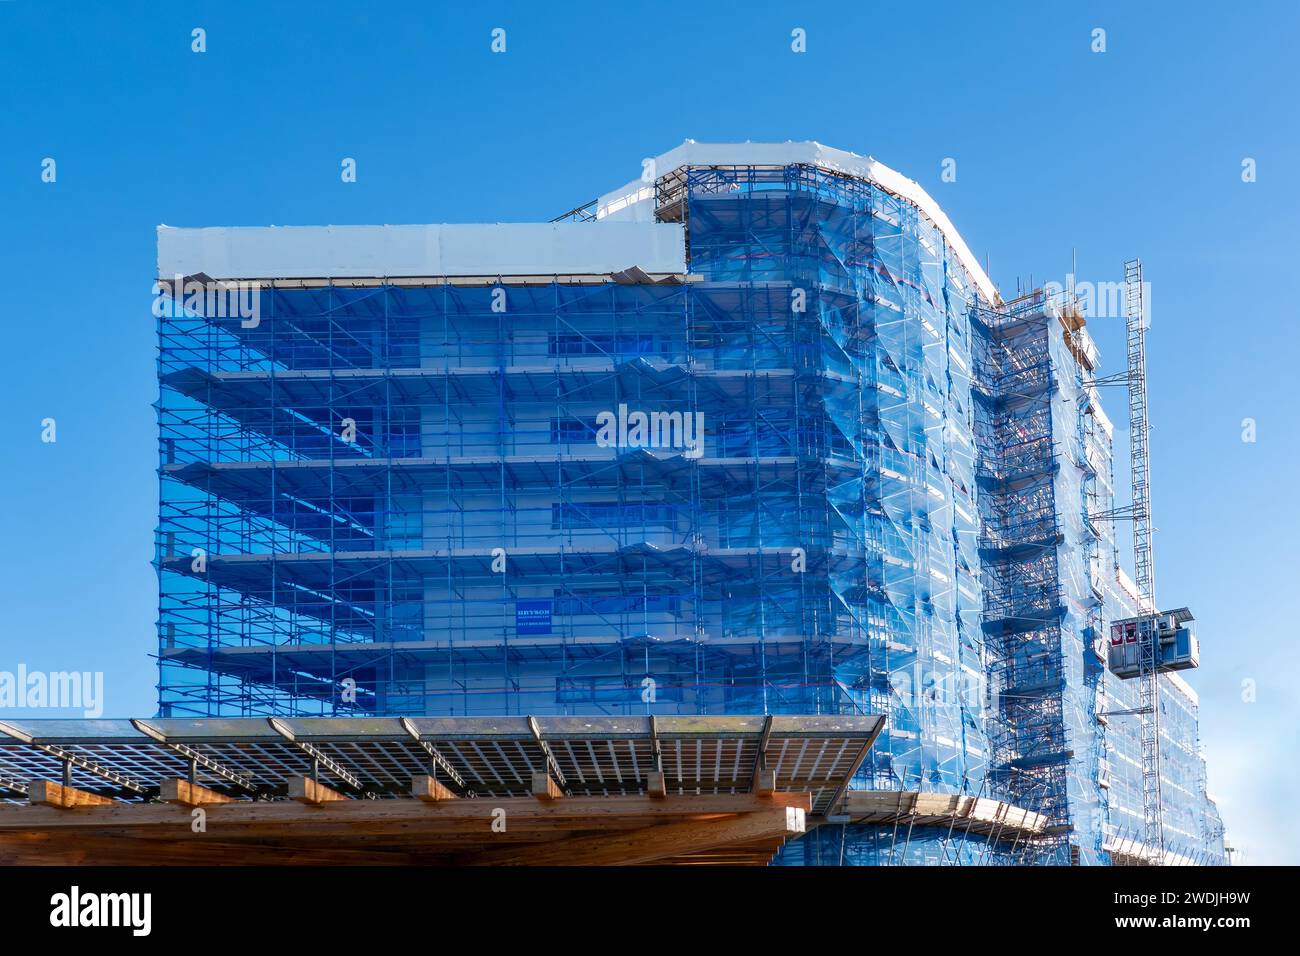 Portishead, Royaume-Uni : vaste échafaudage recouvert de filet bleu placé autour de l'immeuble Mirage pour faciliter le remplacement du revêtement existant Banque D'Images